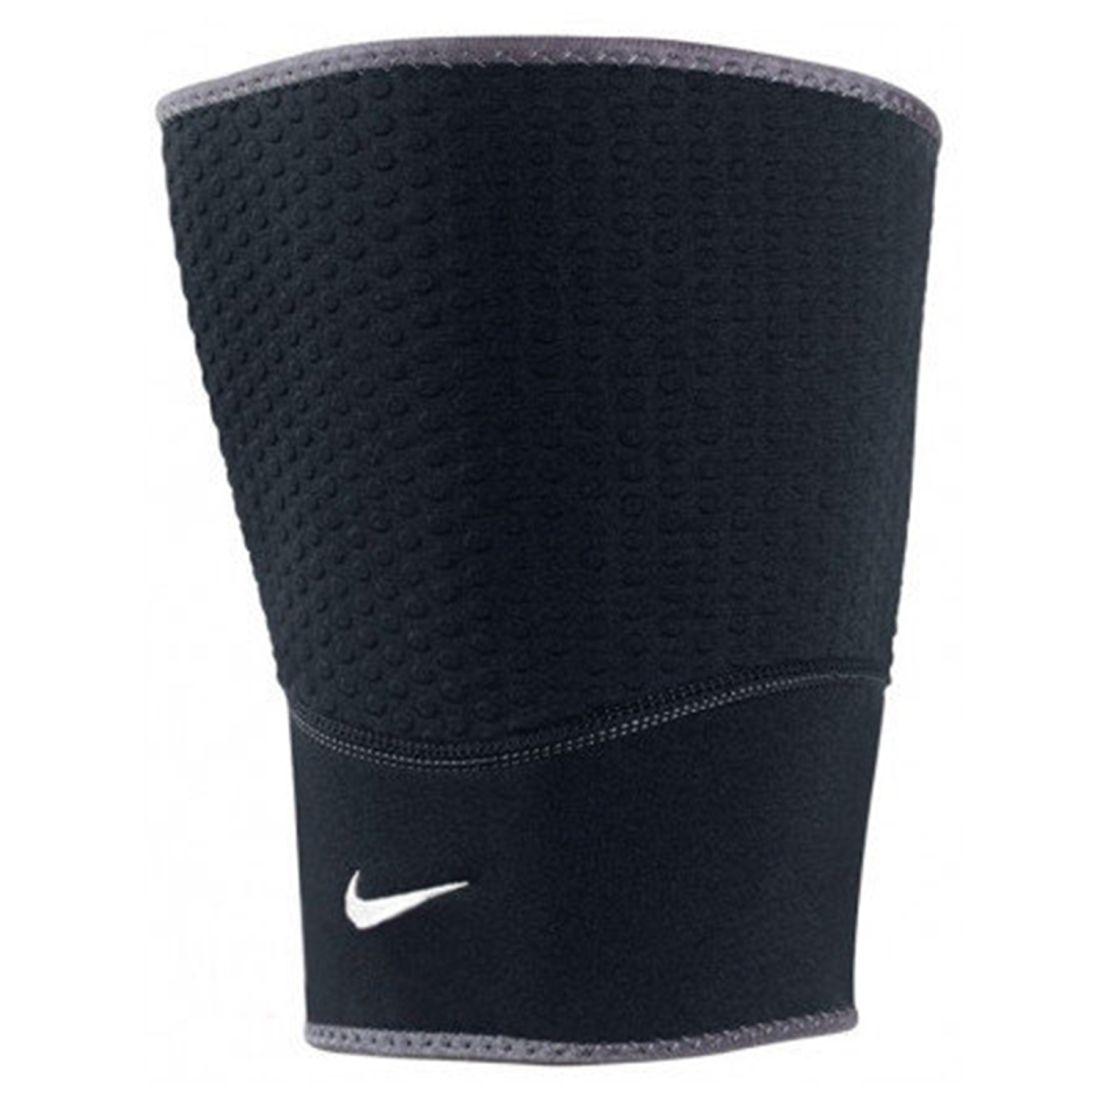 Рукав на бедро Nike Thigh Sleeve